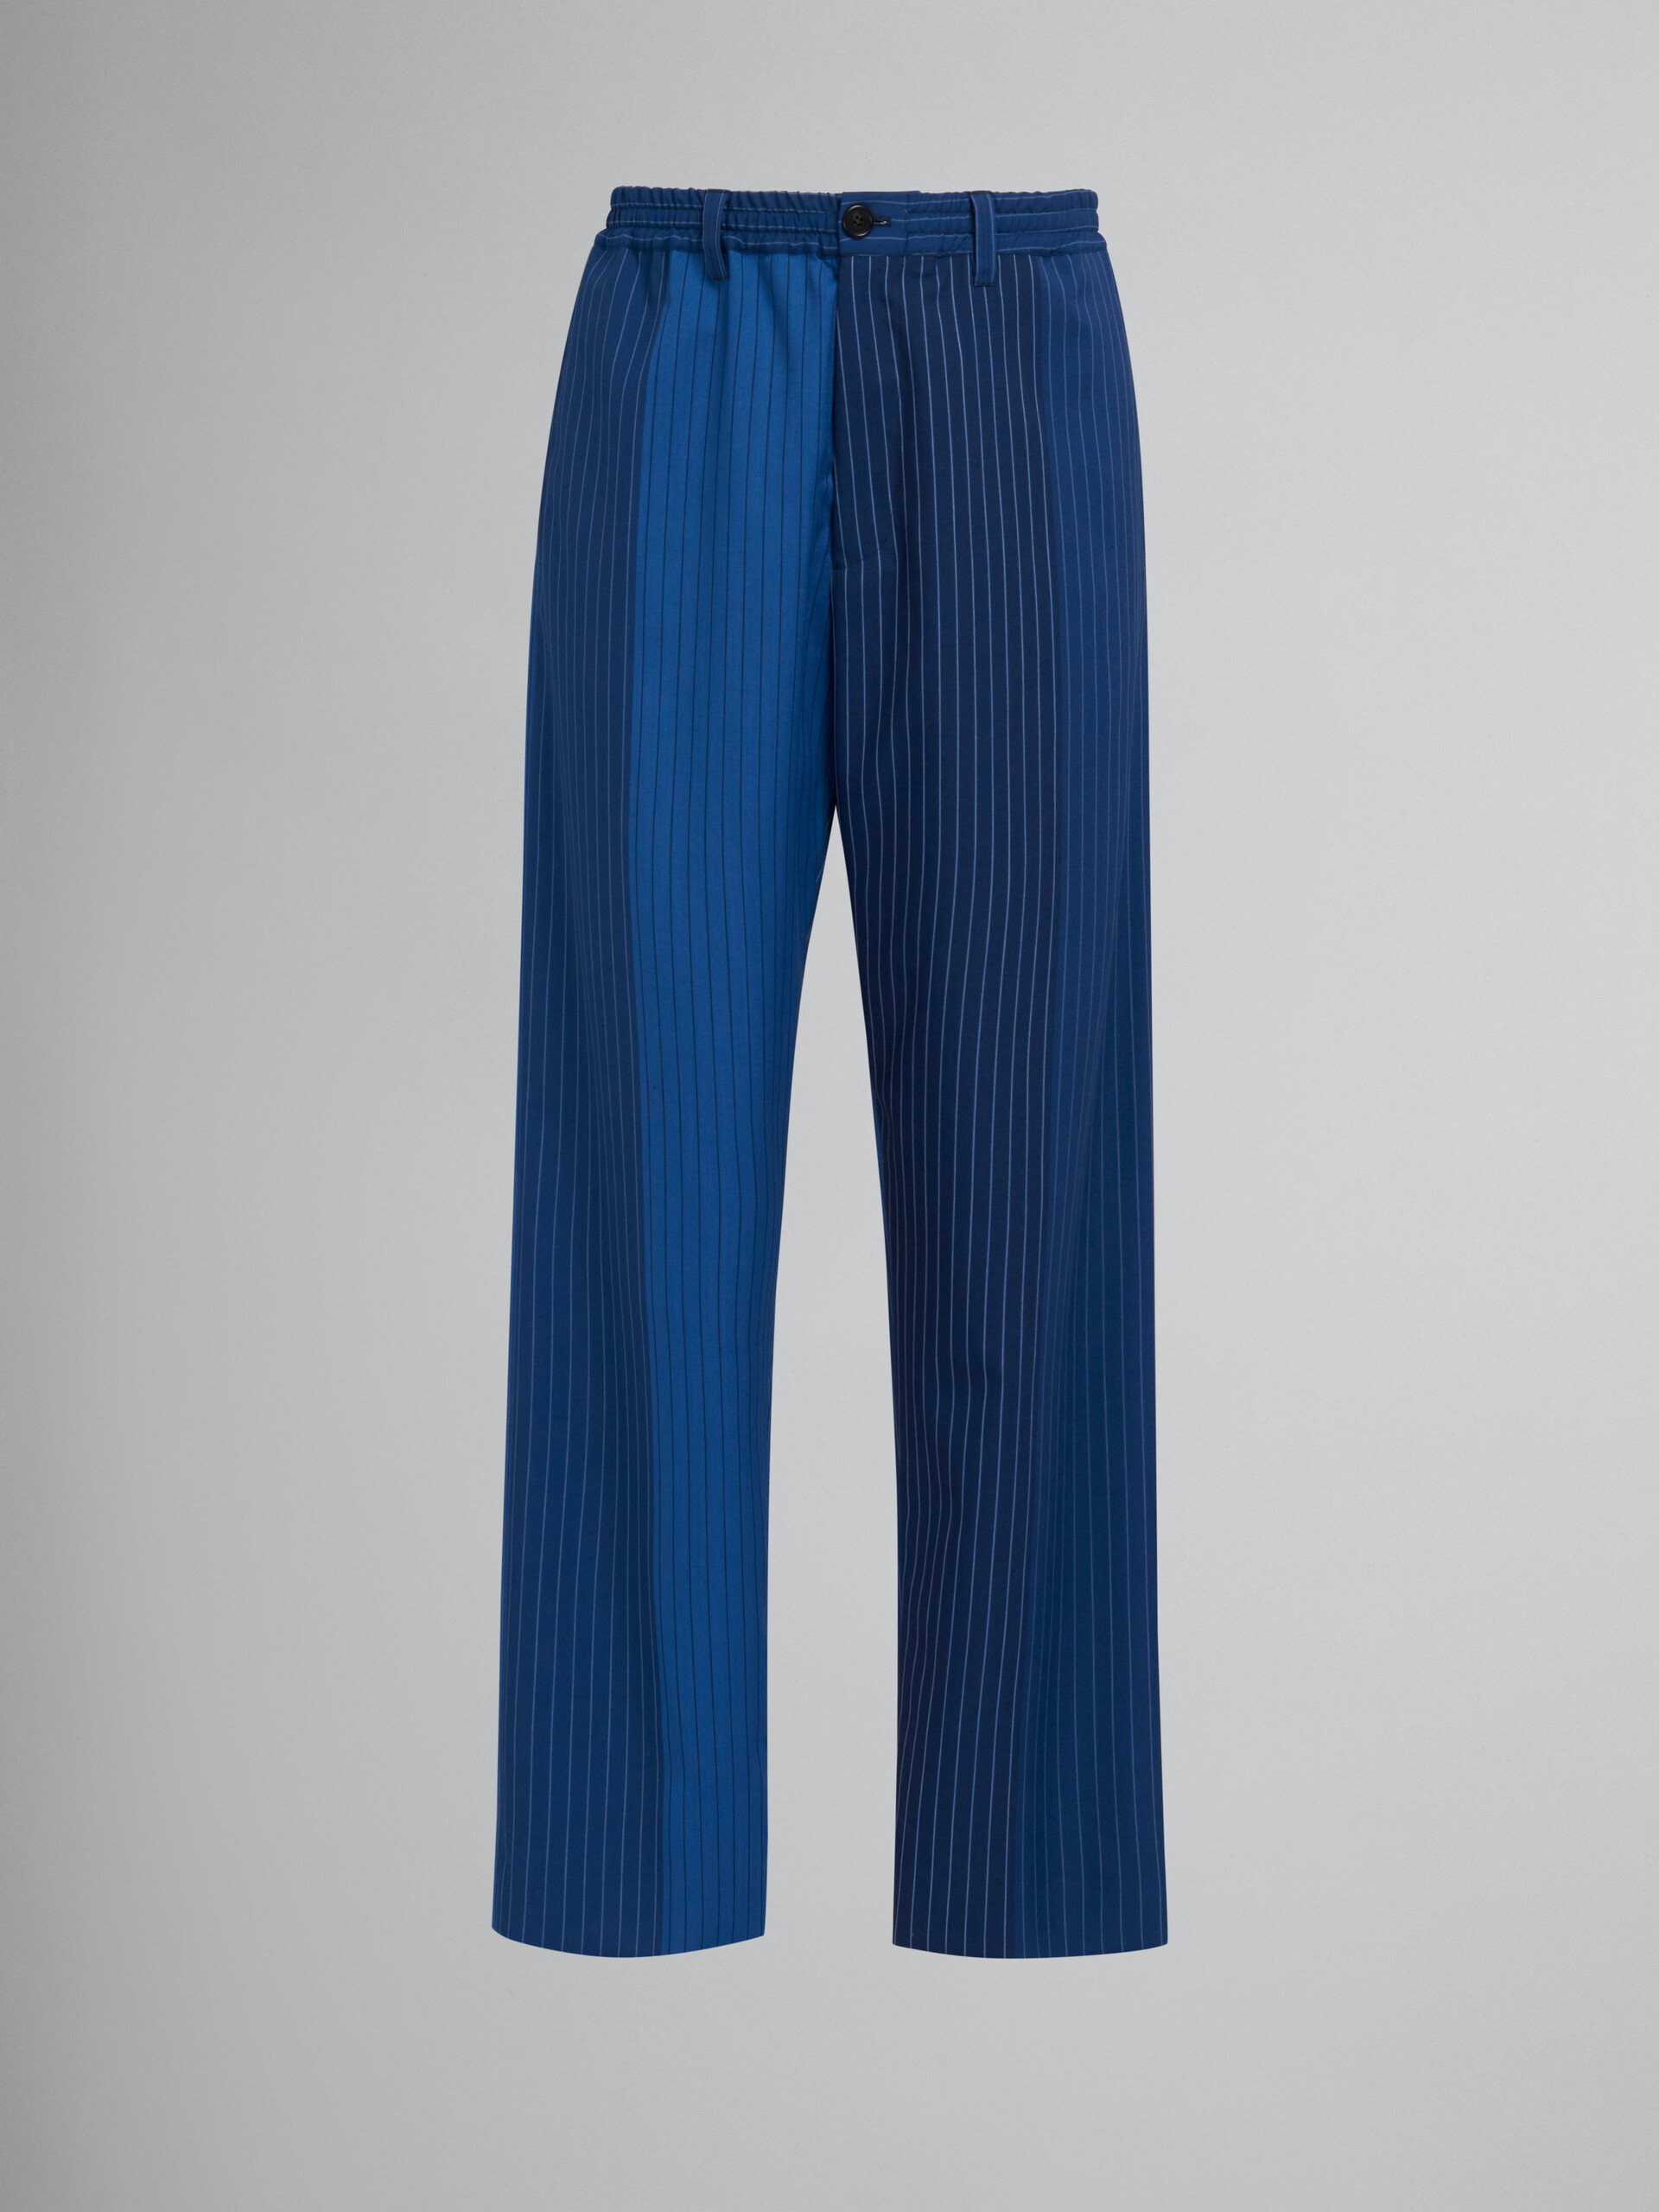 Blue dégradé pinstripe track pants - Pants - Image 1